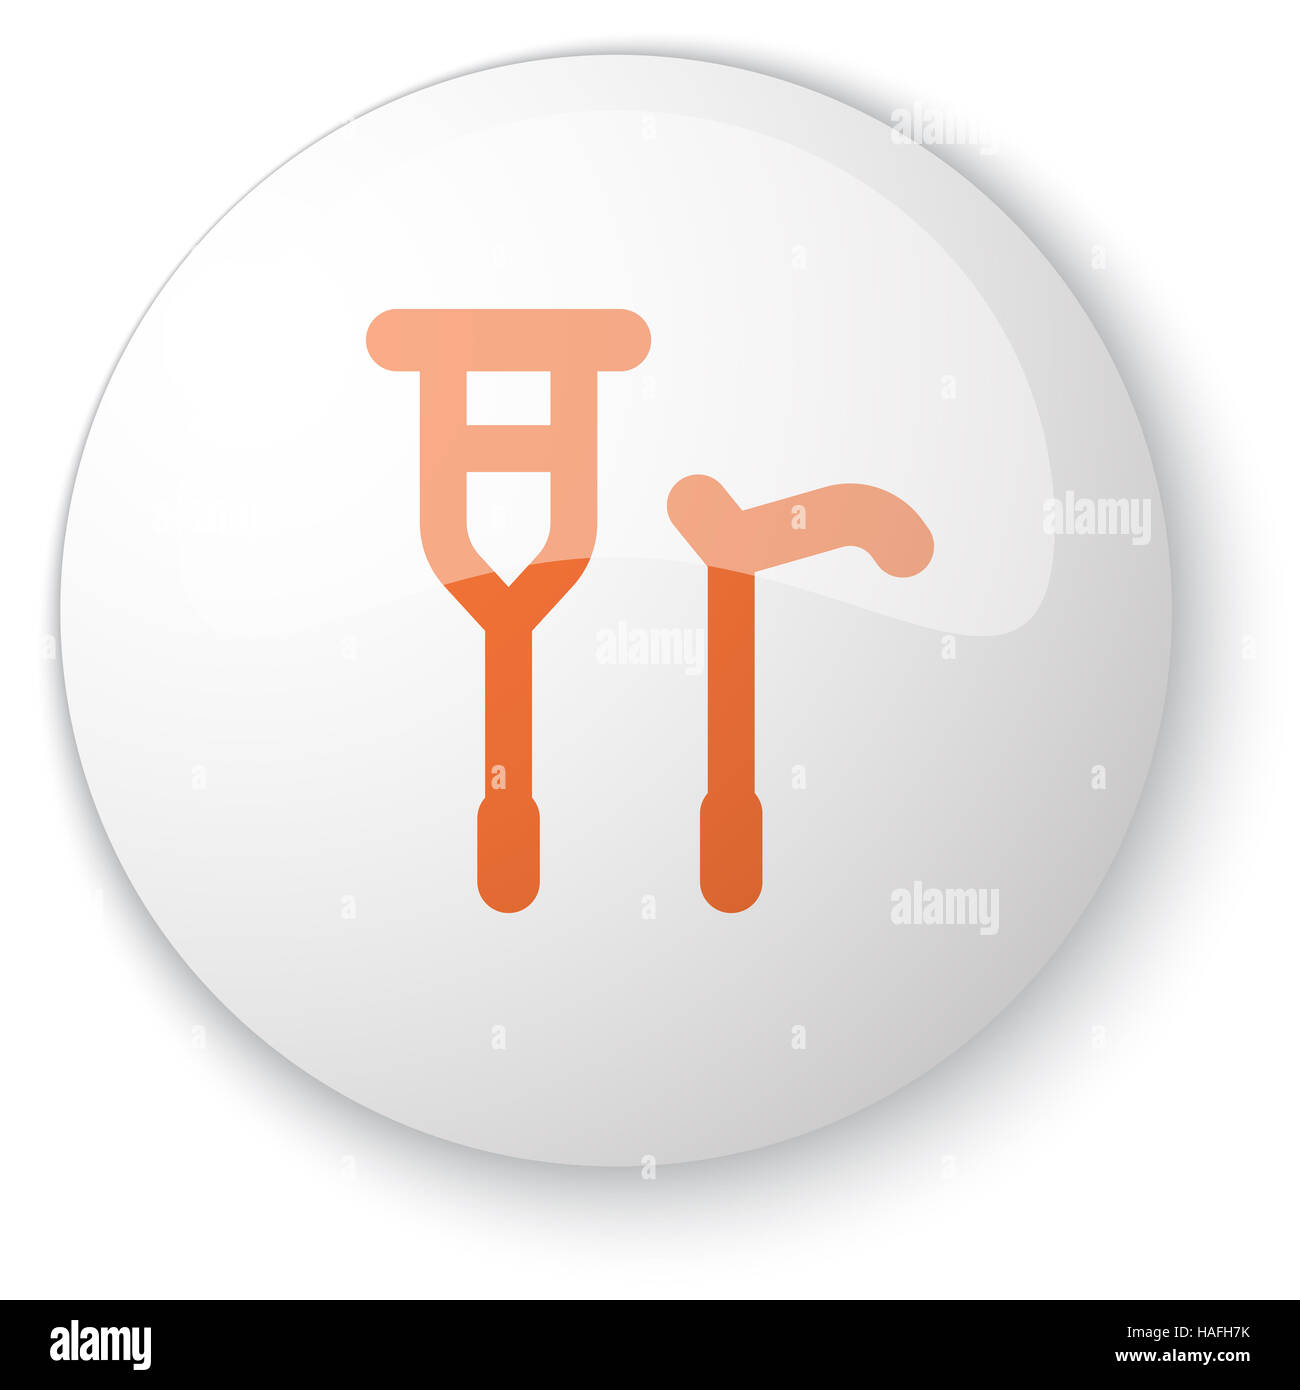 Bouton web blanc brillant avec l'icône de canne béquille orange sur fond blanc Banque D'Images